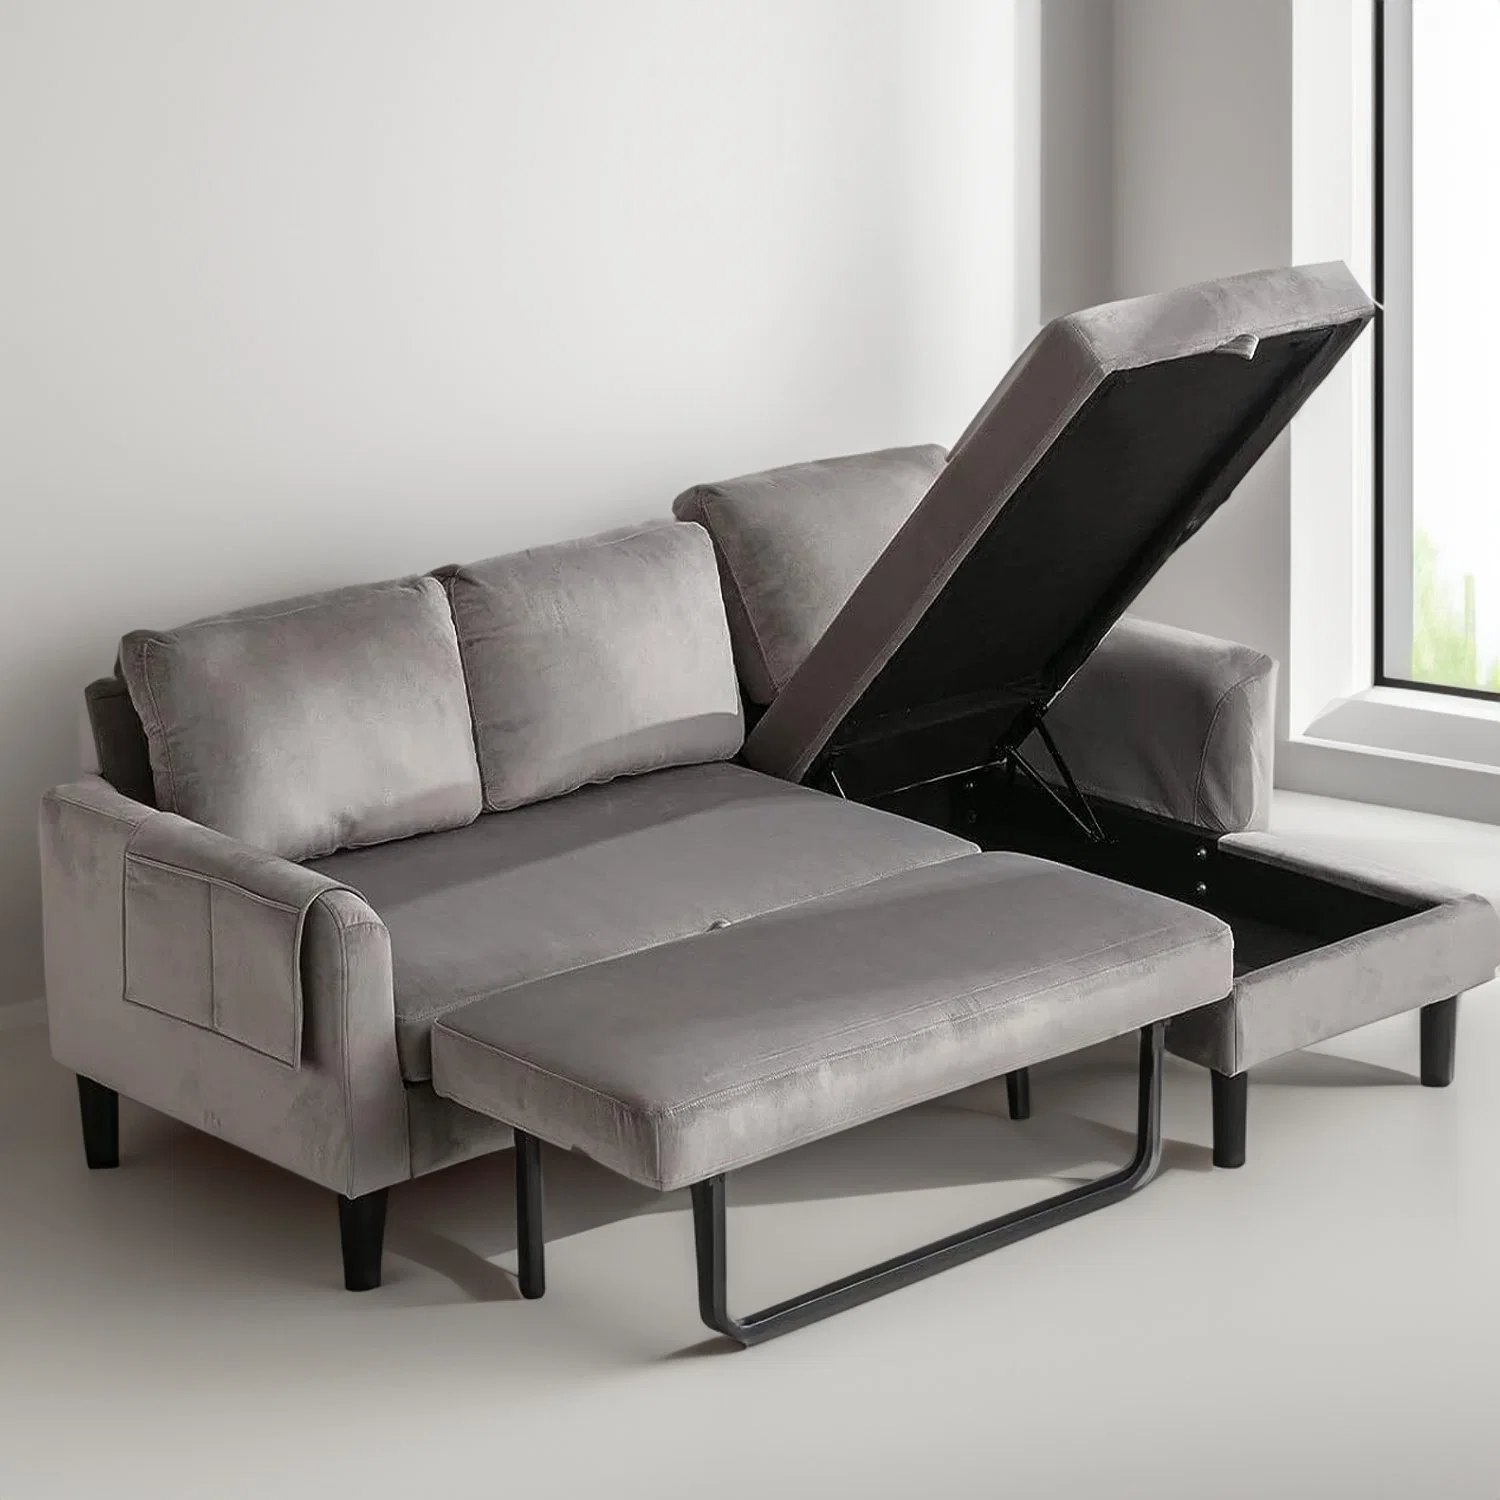 Personalizar Huayang cama plegable función funcional Home Sala de estar Sofá Sofá cama de la fabricación de muebles Cum